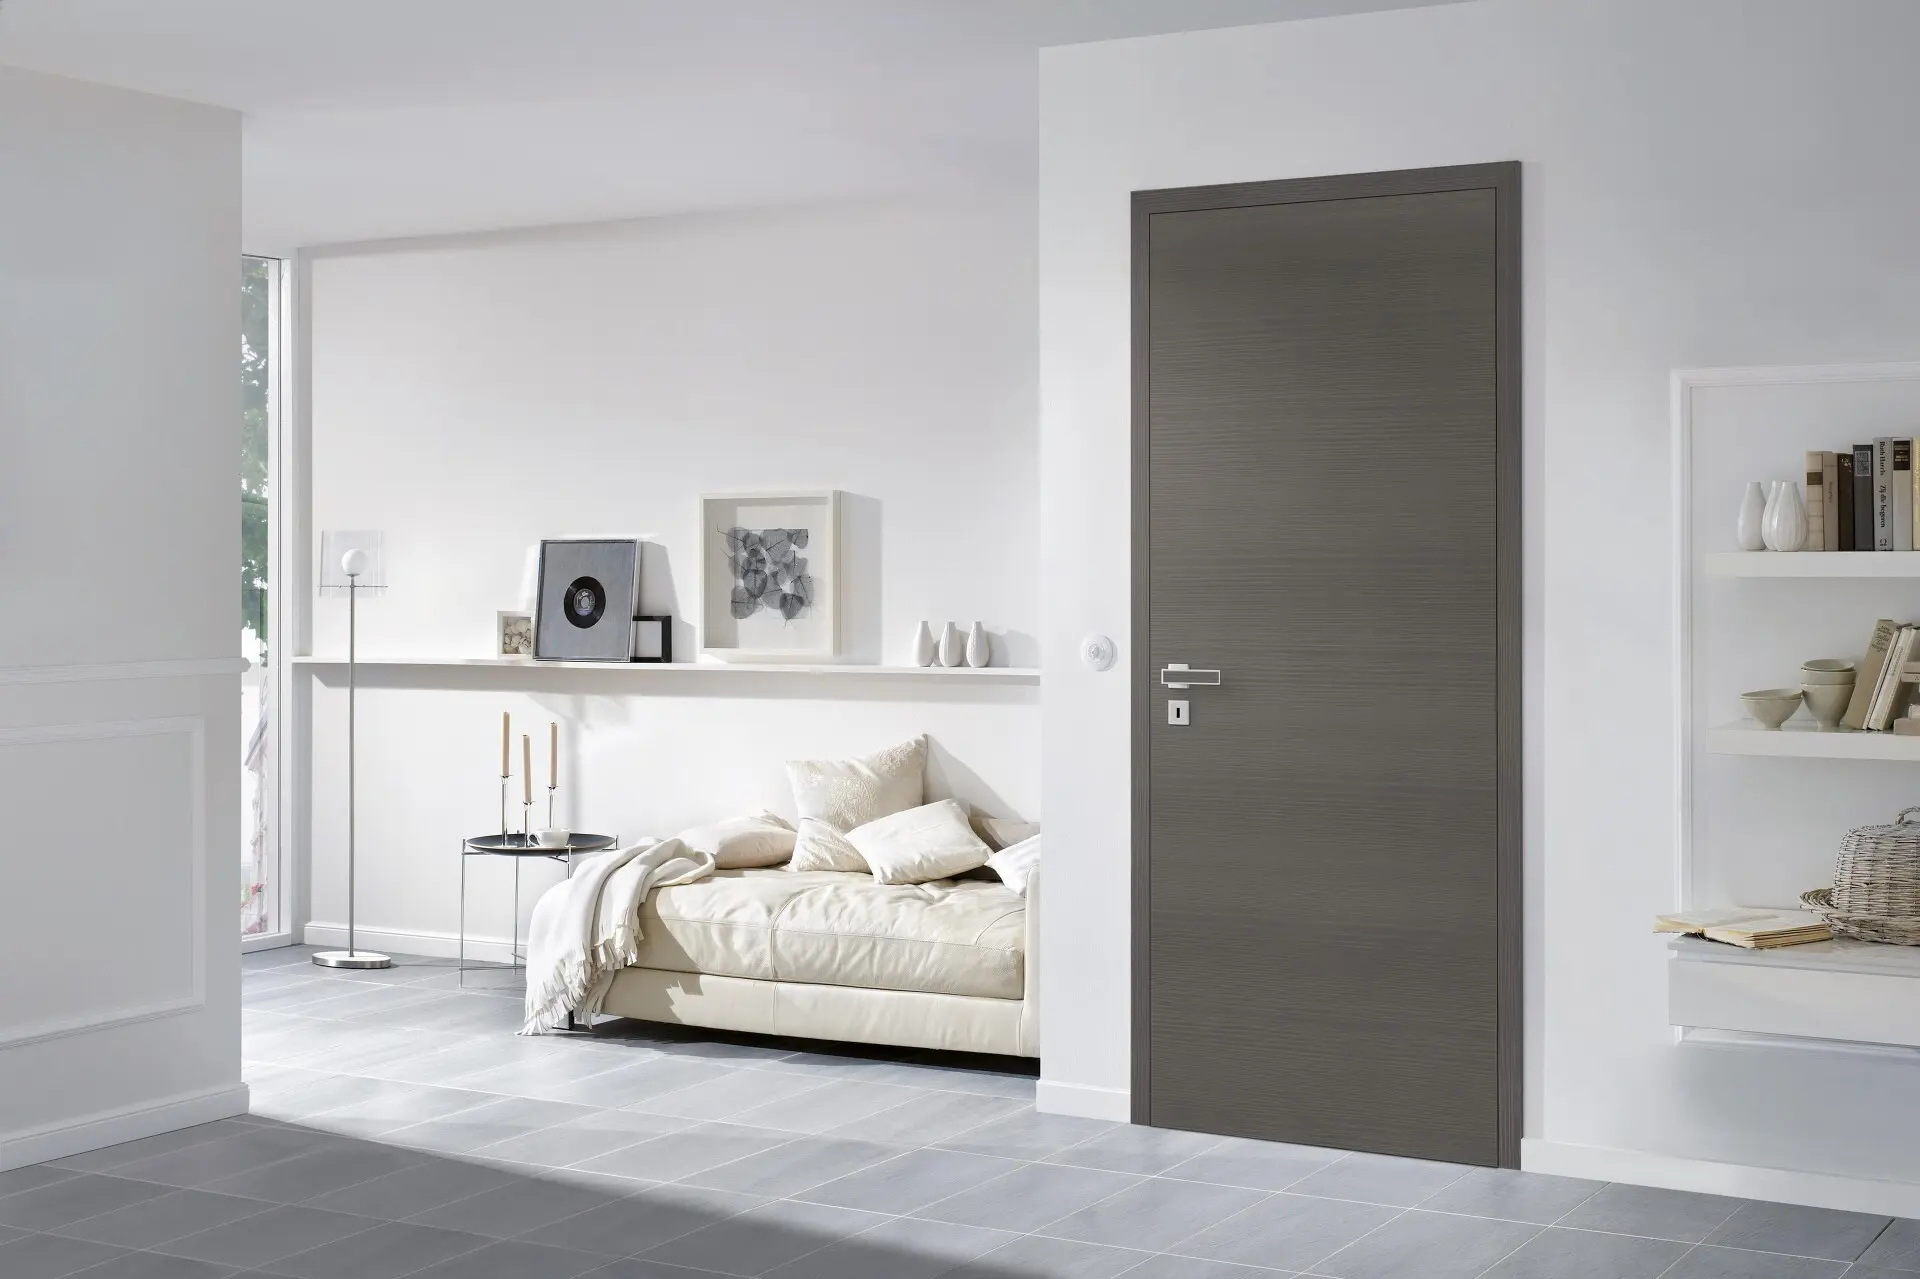 Ein modernes, minimalistisches Schlafzimmer mit einer neutralen Farbpalette, einem niedrigen Bett, Wandregalen und einer grauen CPL Türen-Eingangstür.